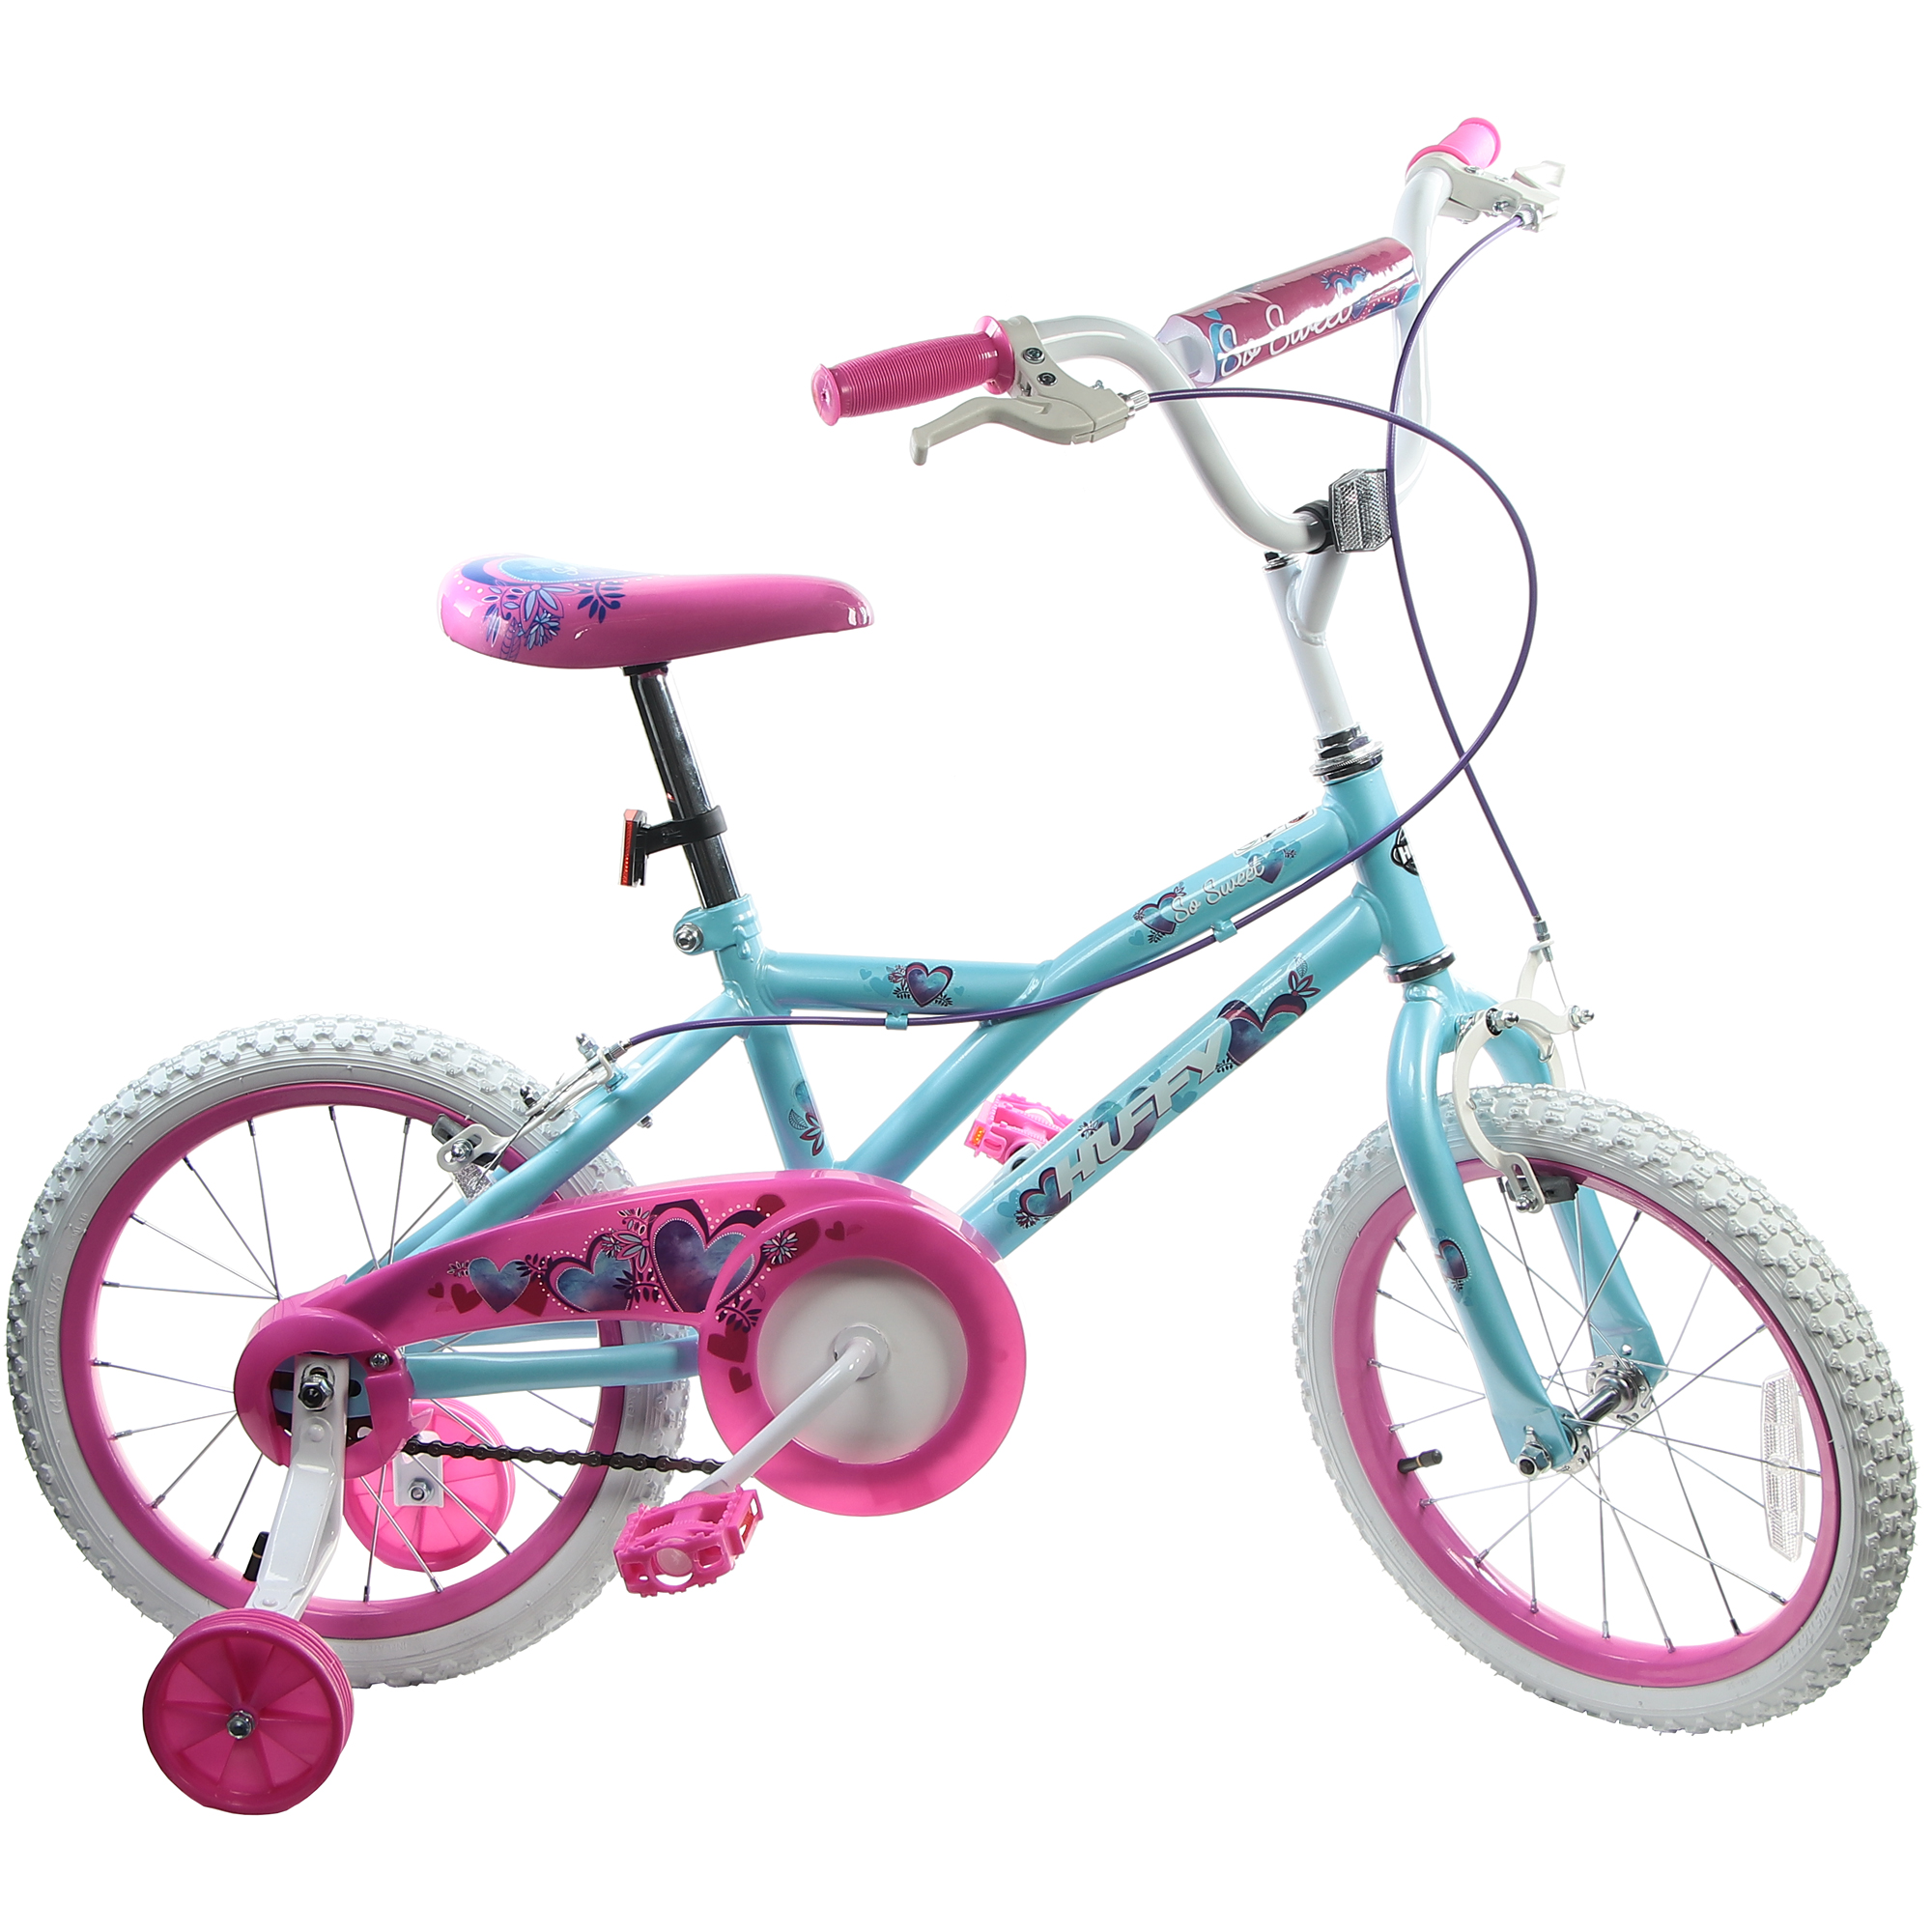 Велосипед детский Huffy So sweet, 16, для девочек велосипед складной casadei allumiminio 20 дюймов серый